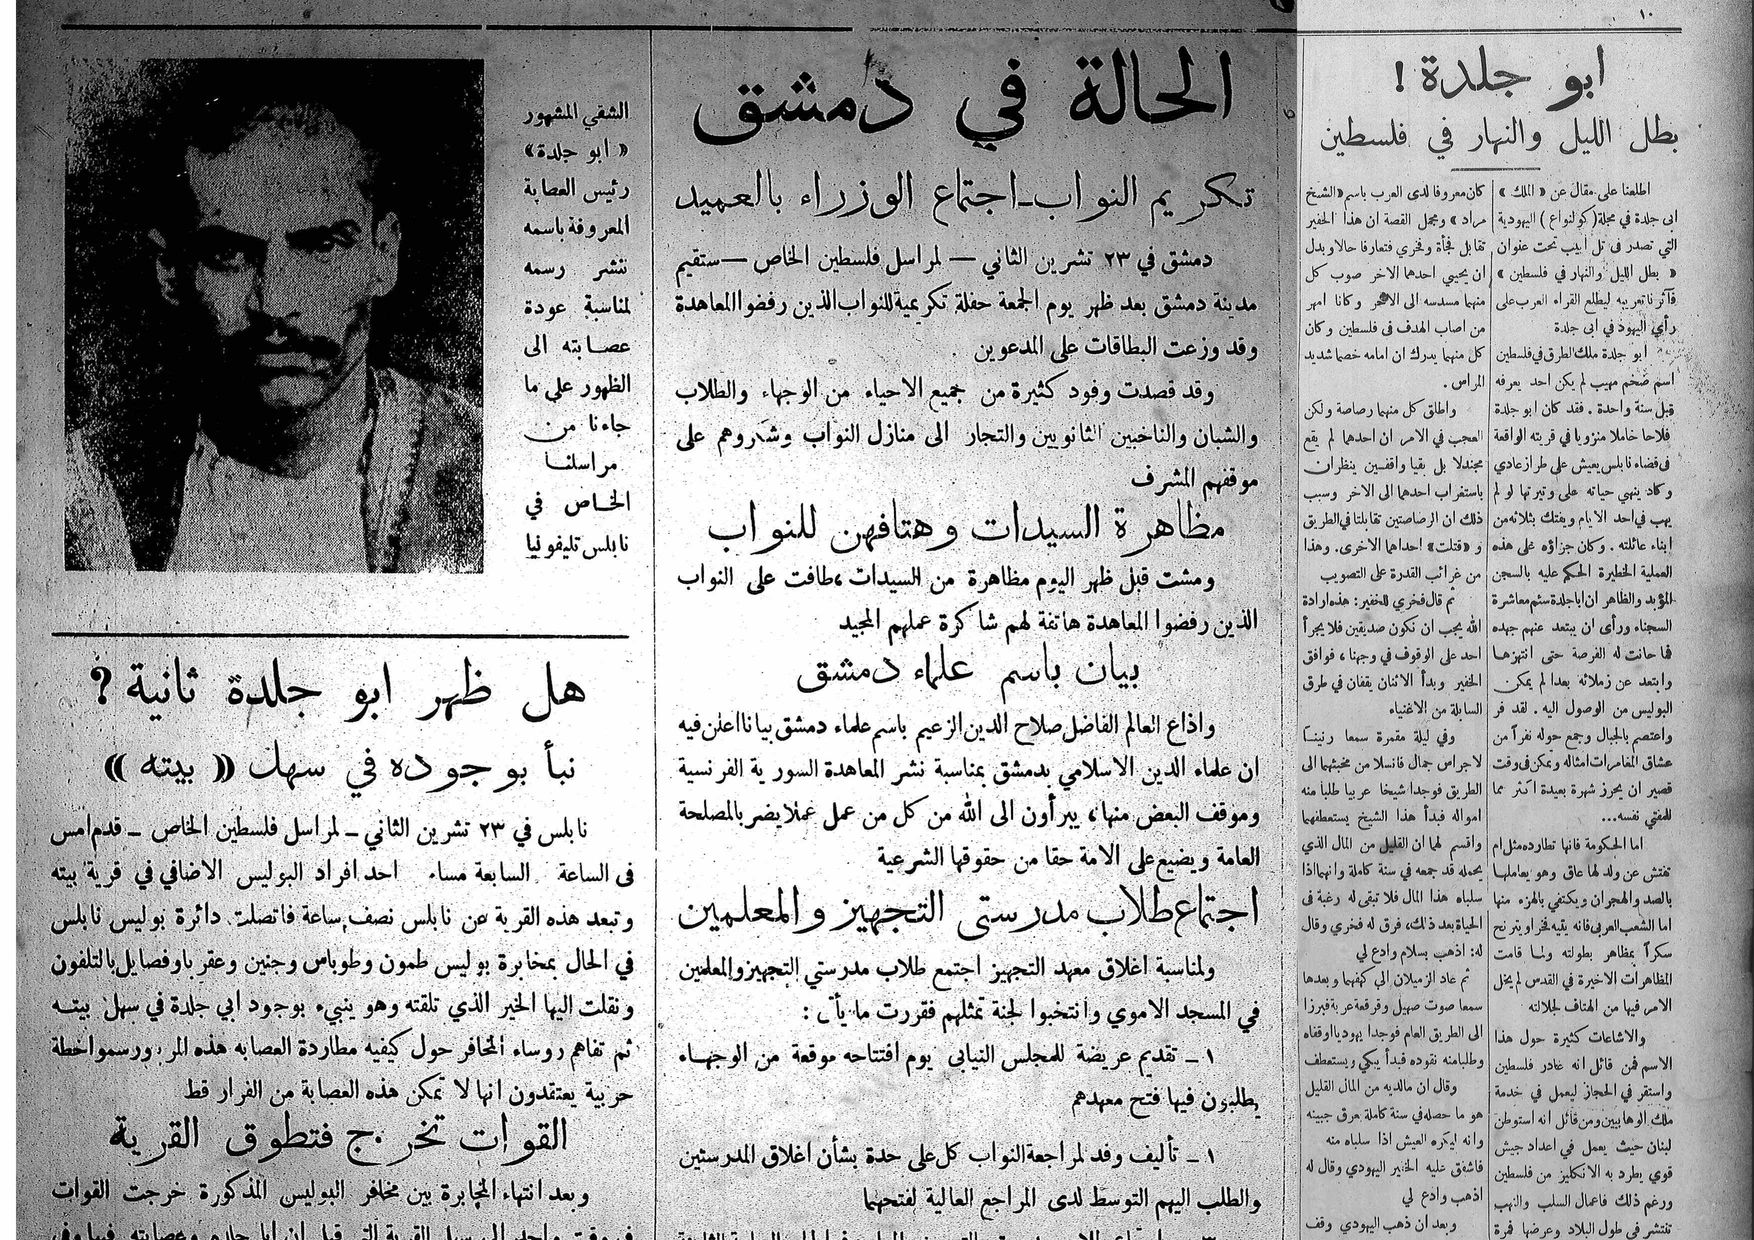 عناوين الجريدة: أبو جلدة بطل الليل والنهار، الحالة في دمشق